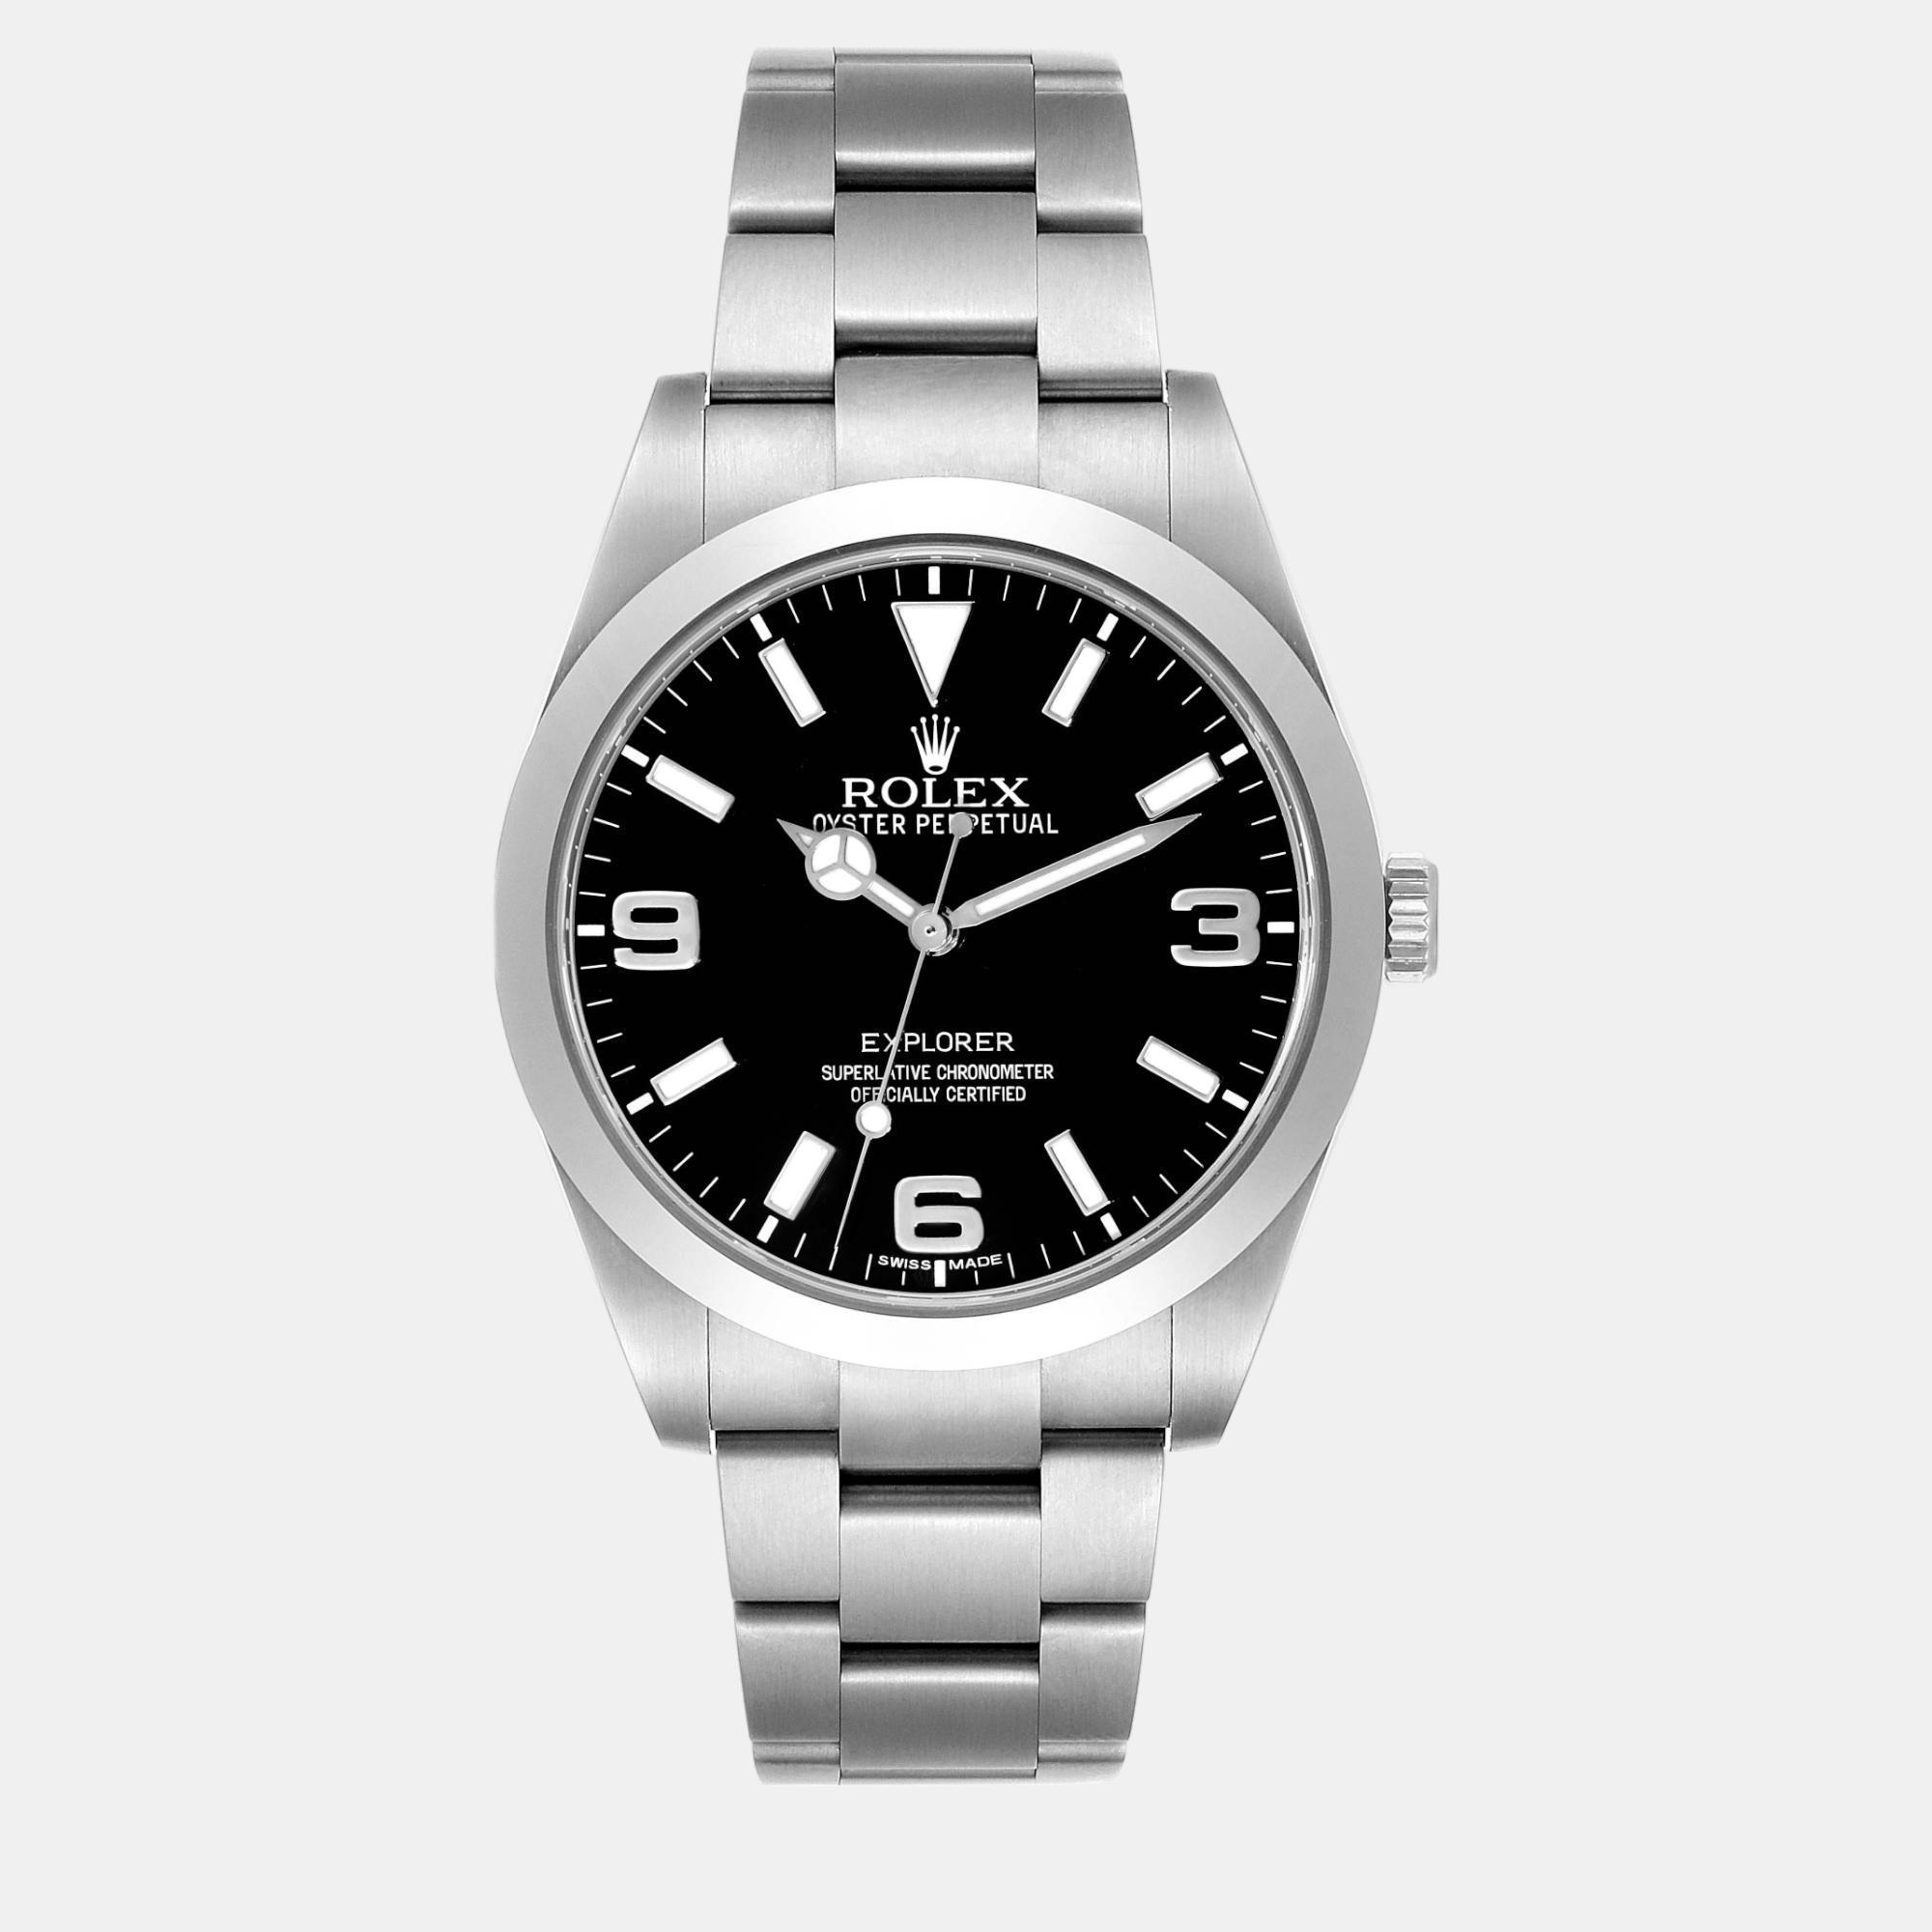 Rolex explorer i black dial steel men's watch 214270 39 mm